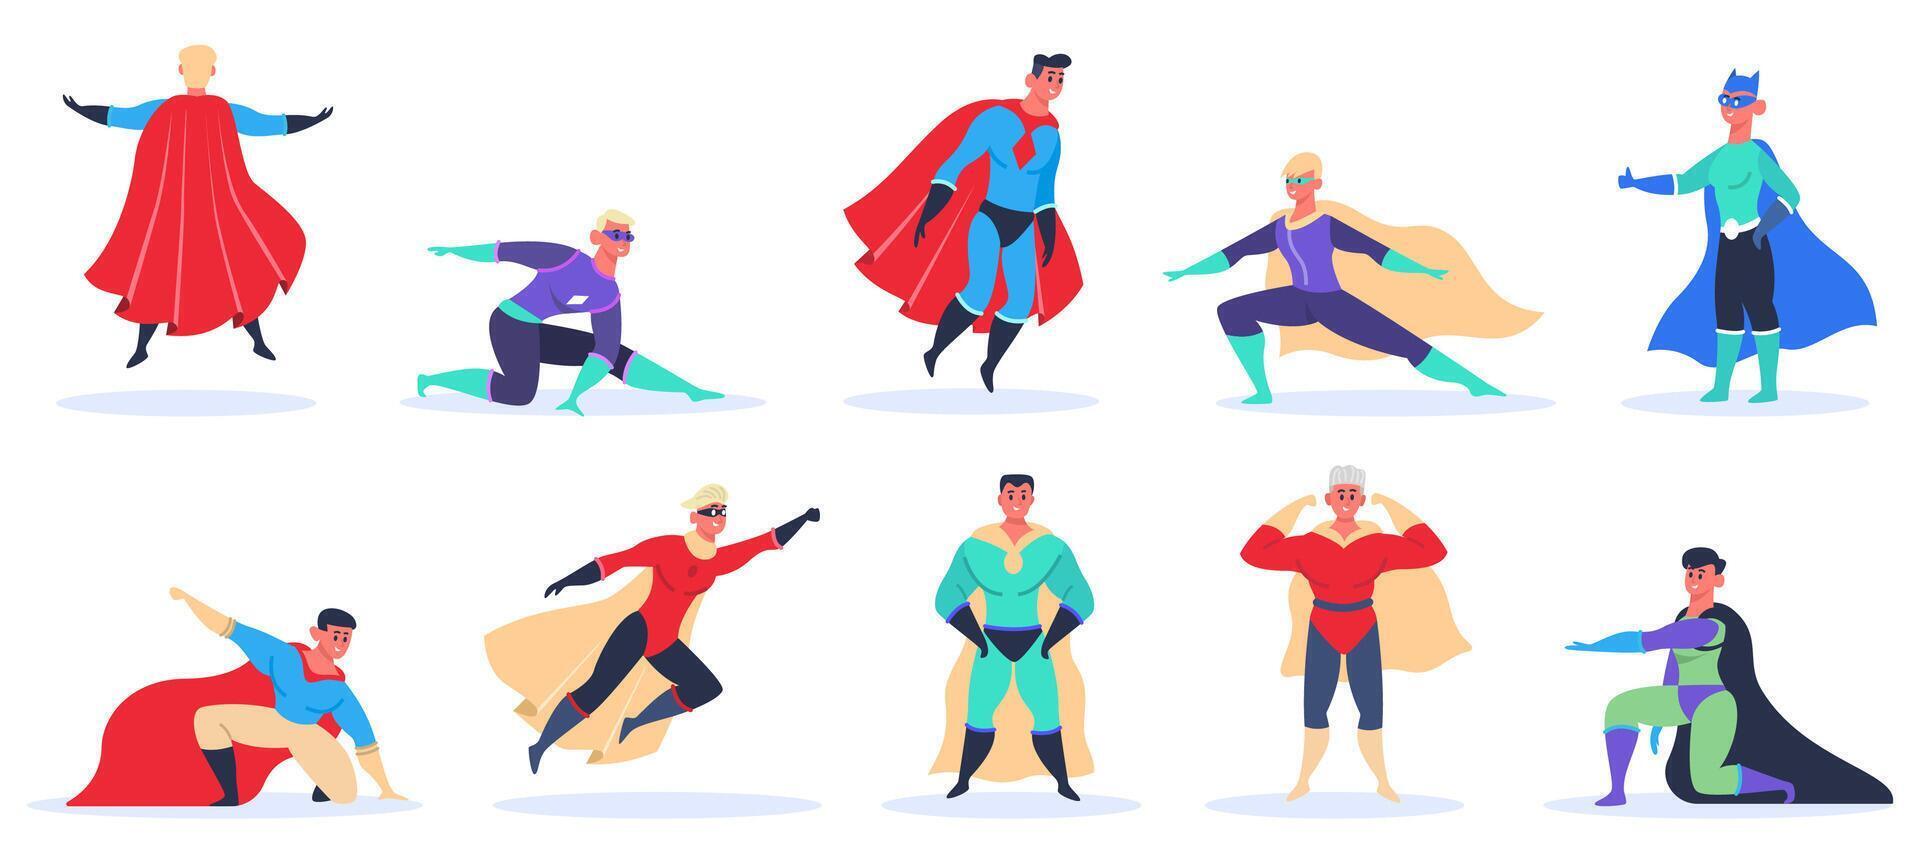 mannetje superheld karakters. gespierd knap superman in superhelden kostuum, vliegend en staand in actie houding geïsoleerd vector illustratie reeks